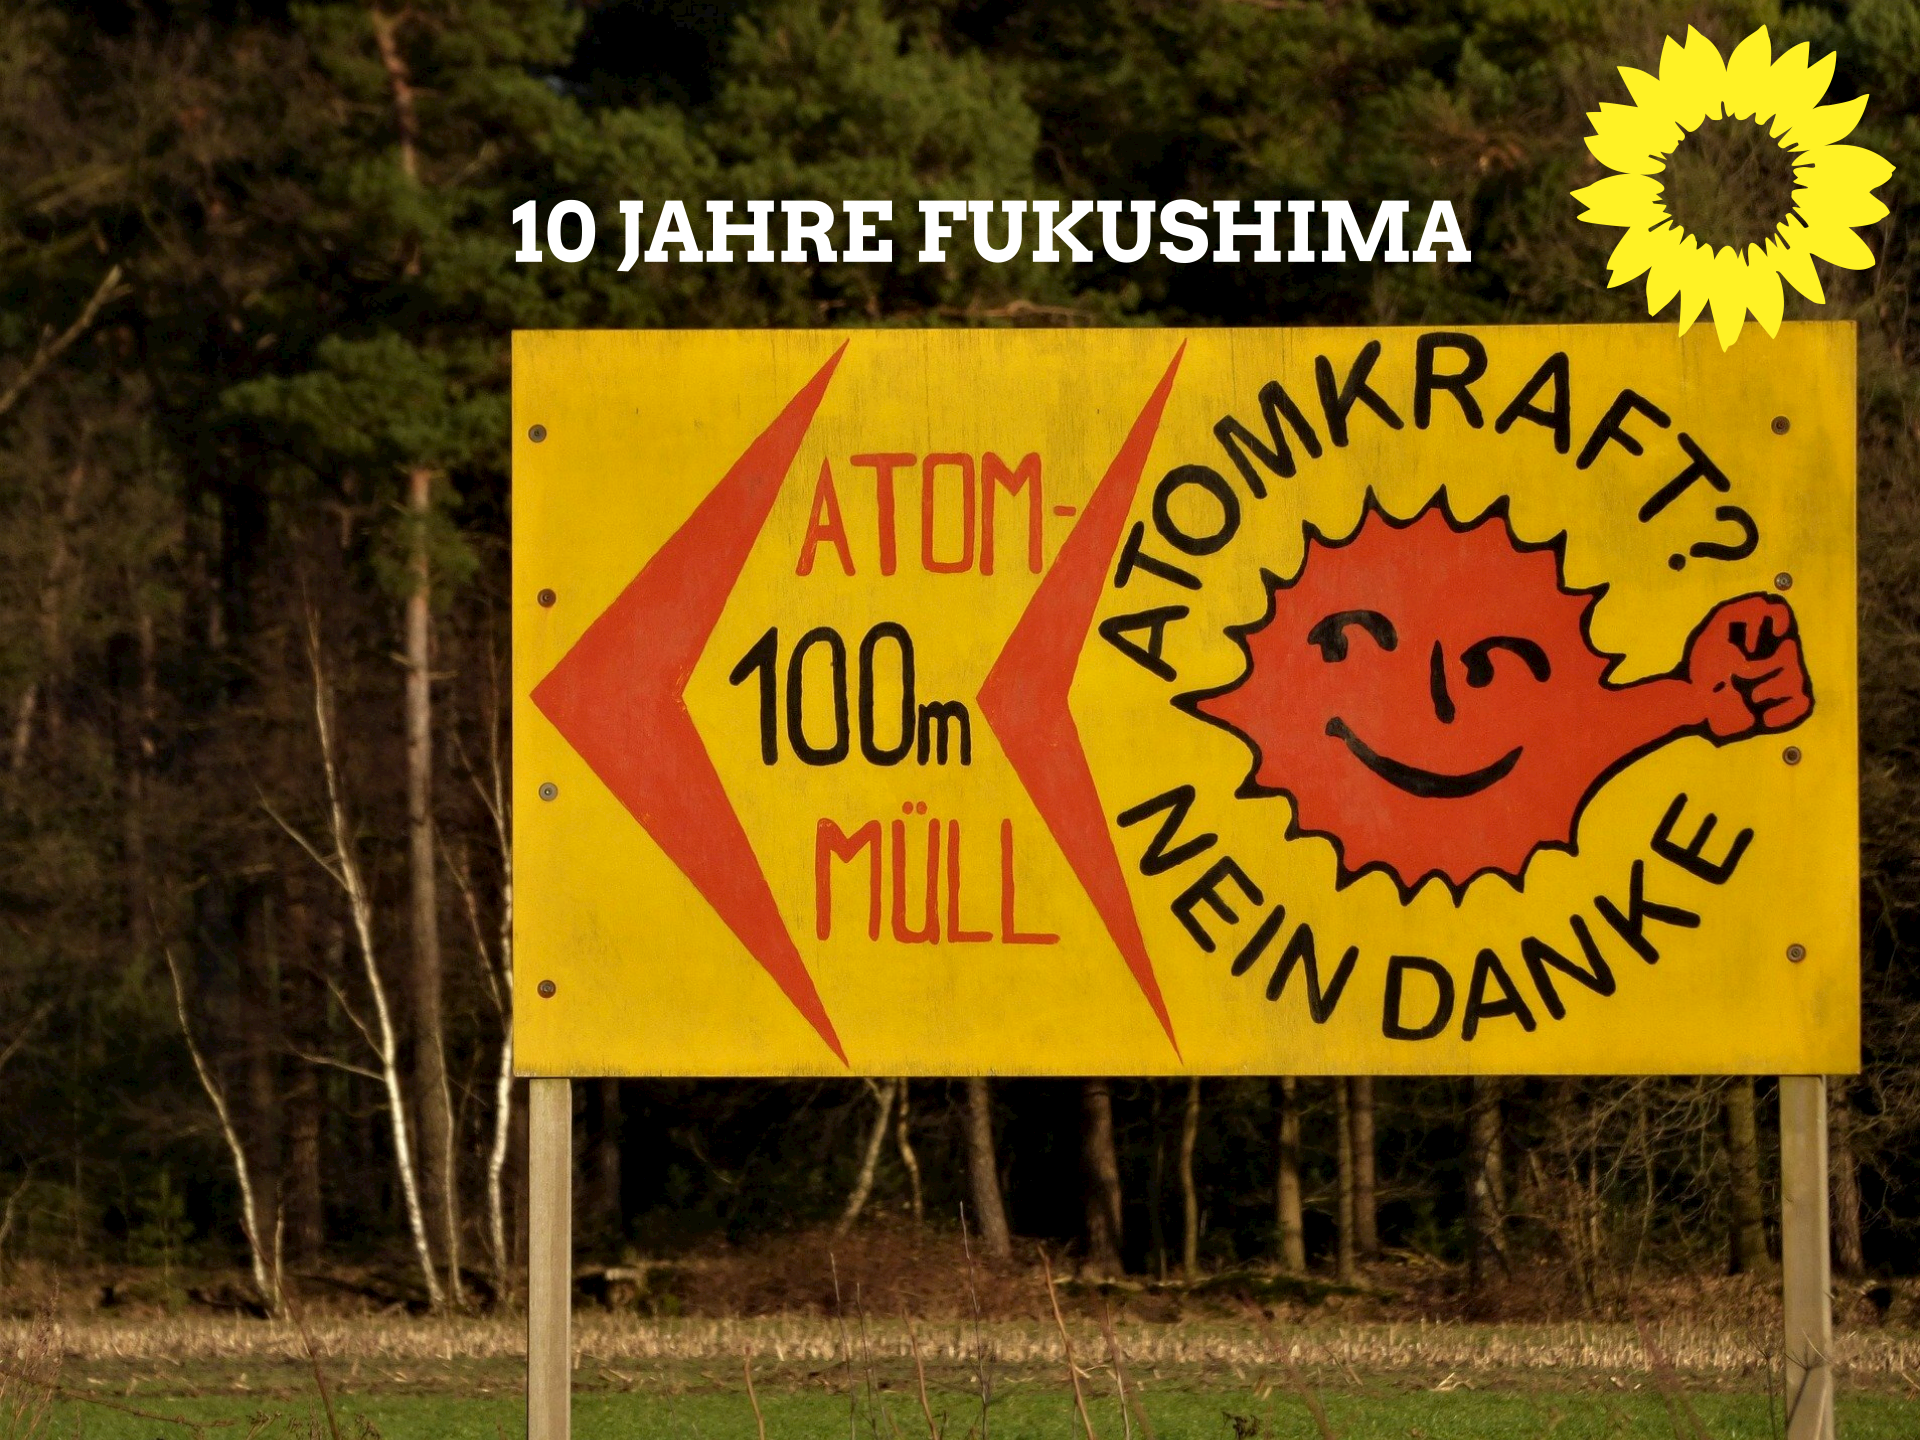 10 Jahre Fukushima: Für eine erneuerbare Zukunft